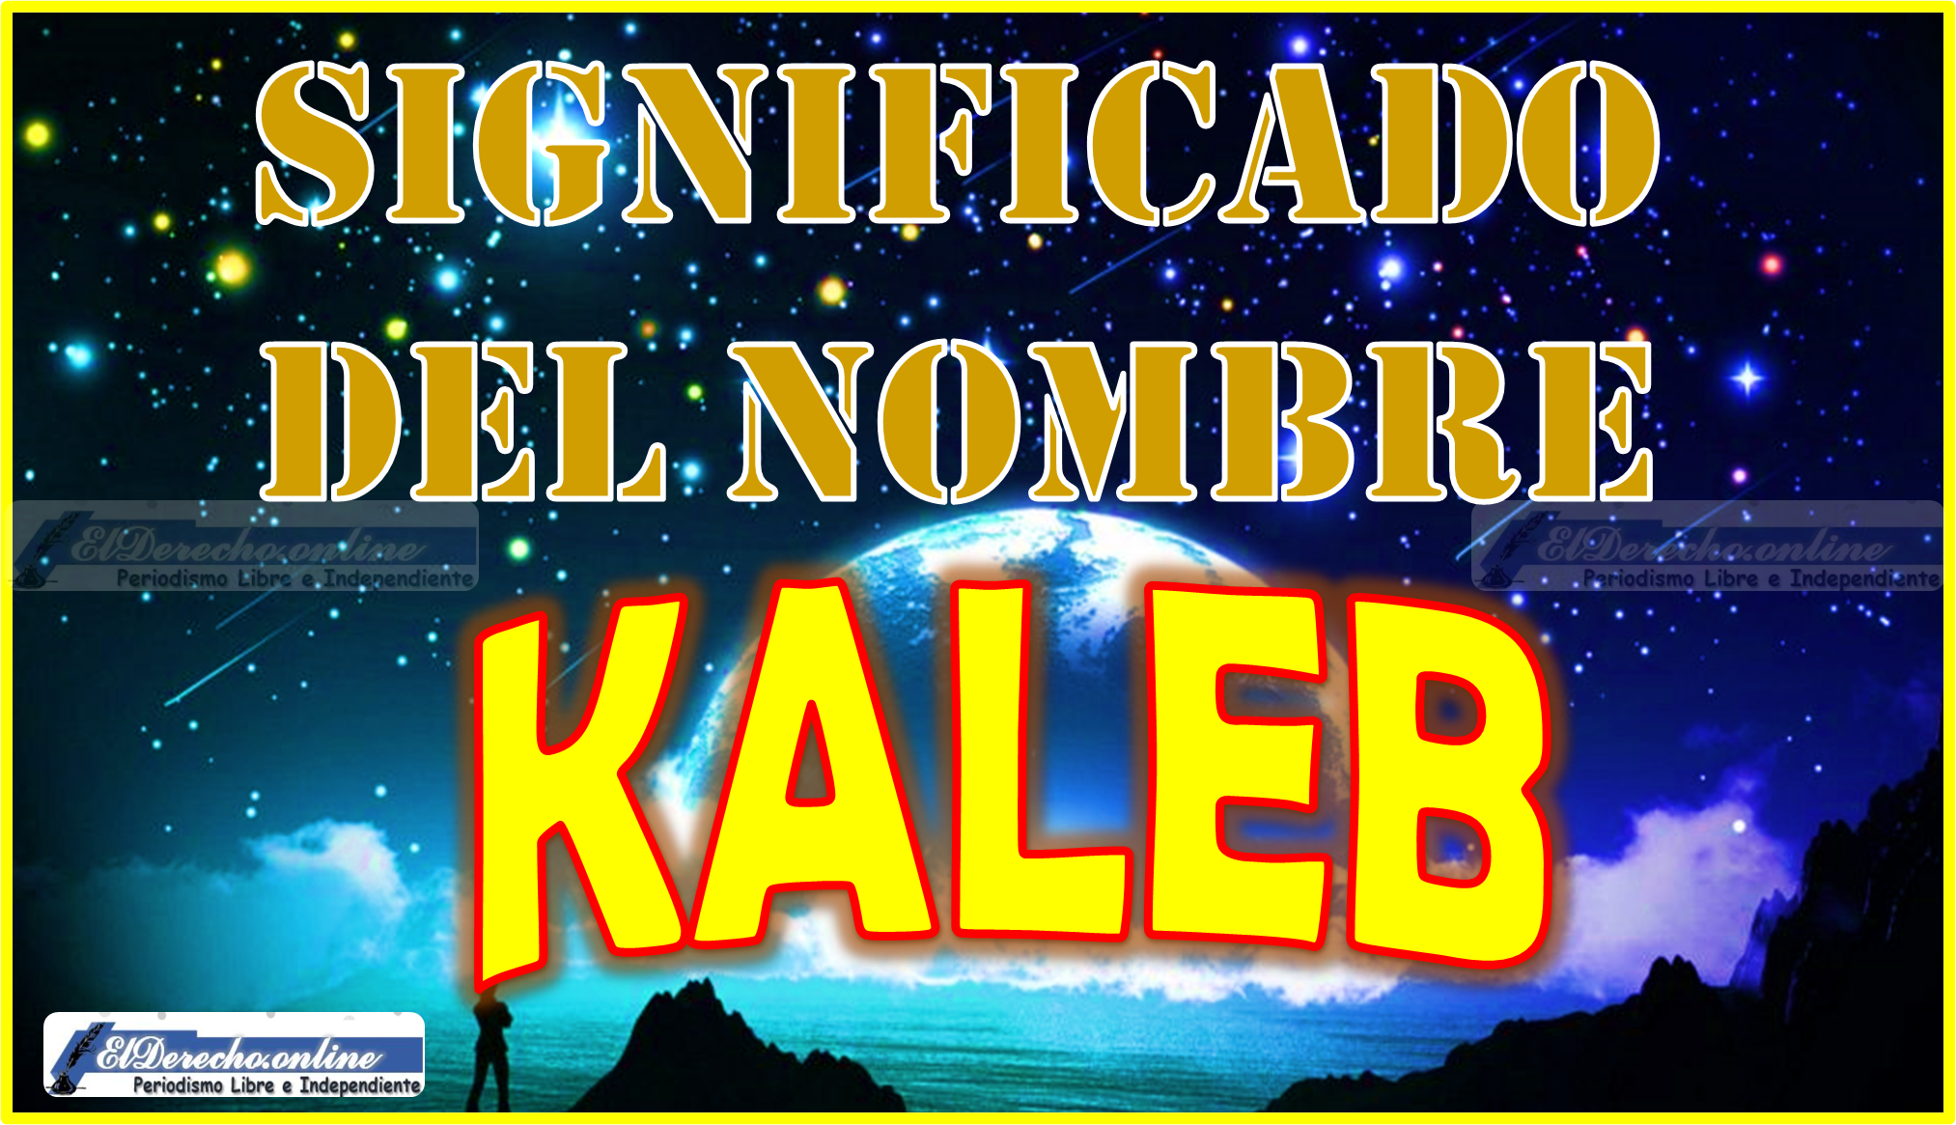 Significado del nombre Kaleb, su origen y más